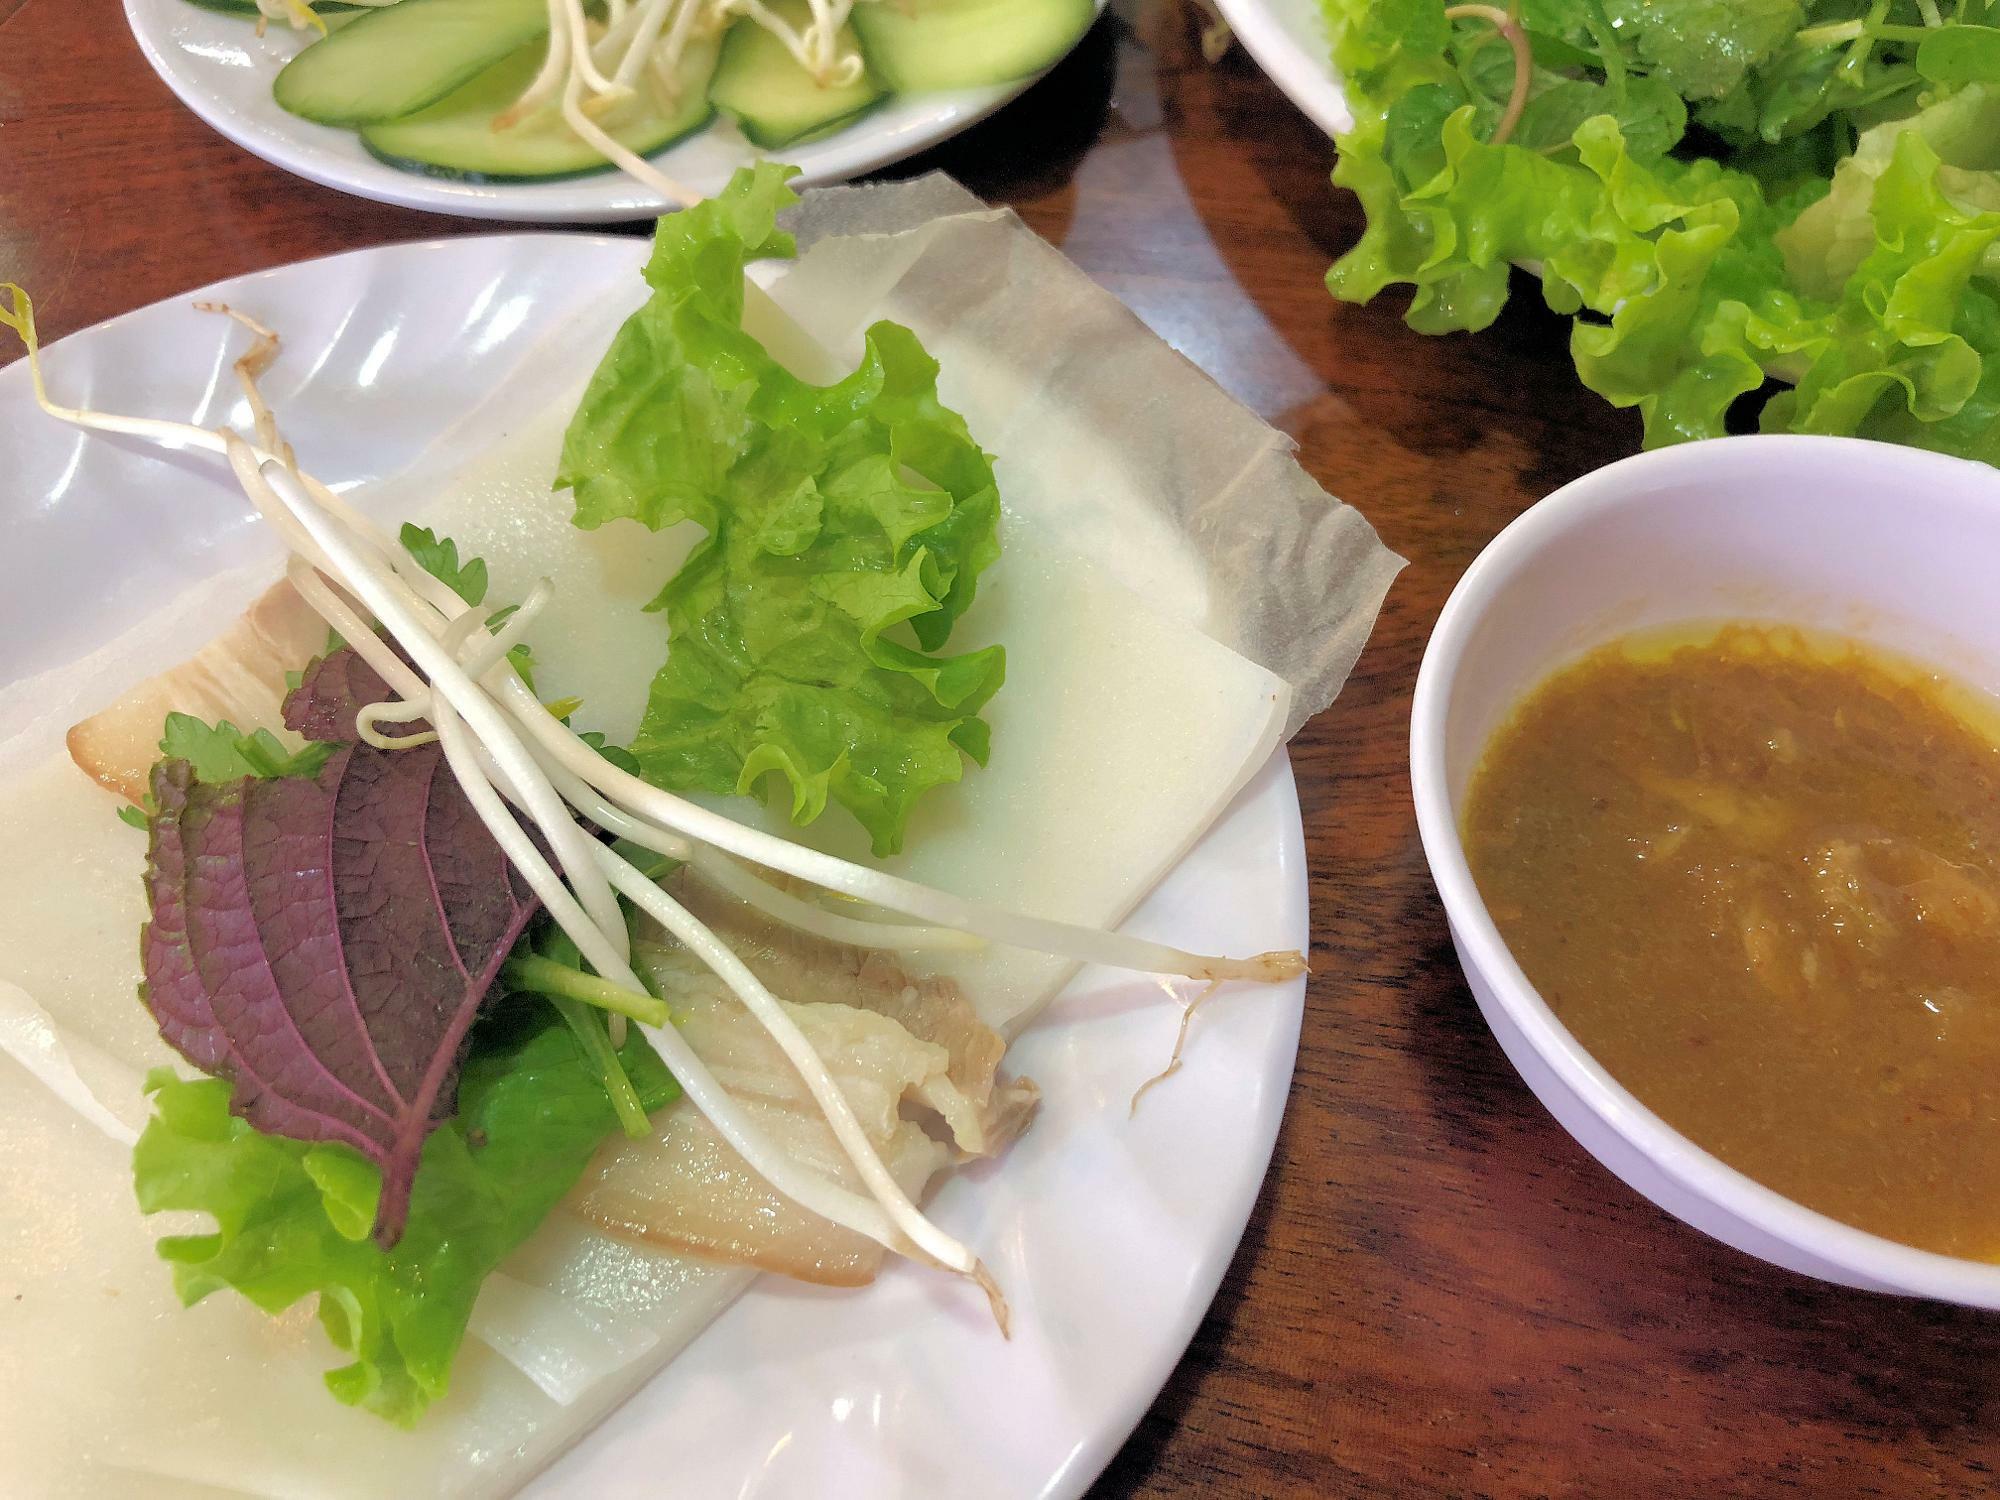 ベトナム料理では、野菜や肉などをライスペーパーに挟んで食べるものがあります